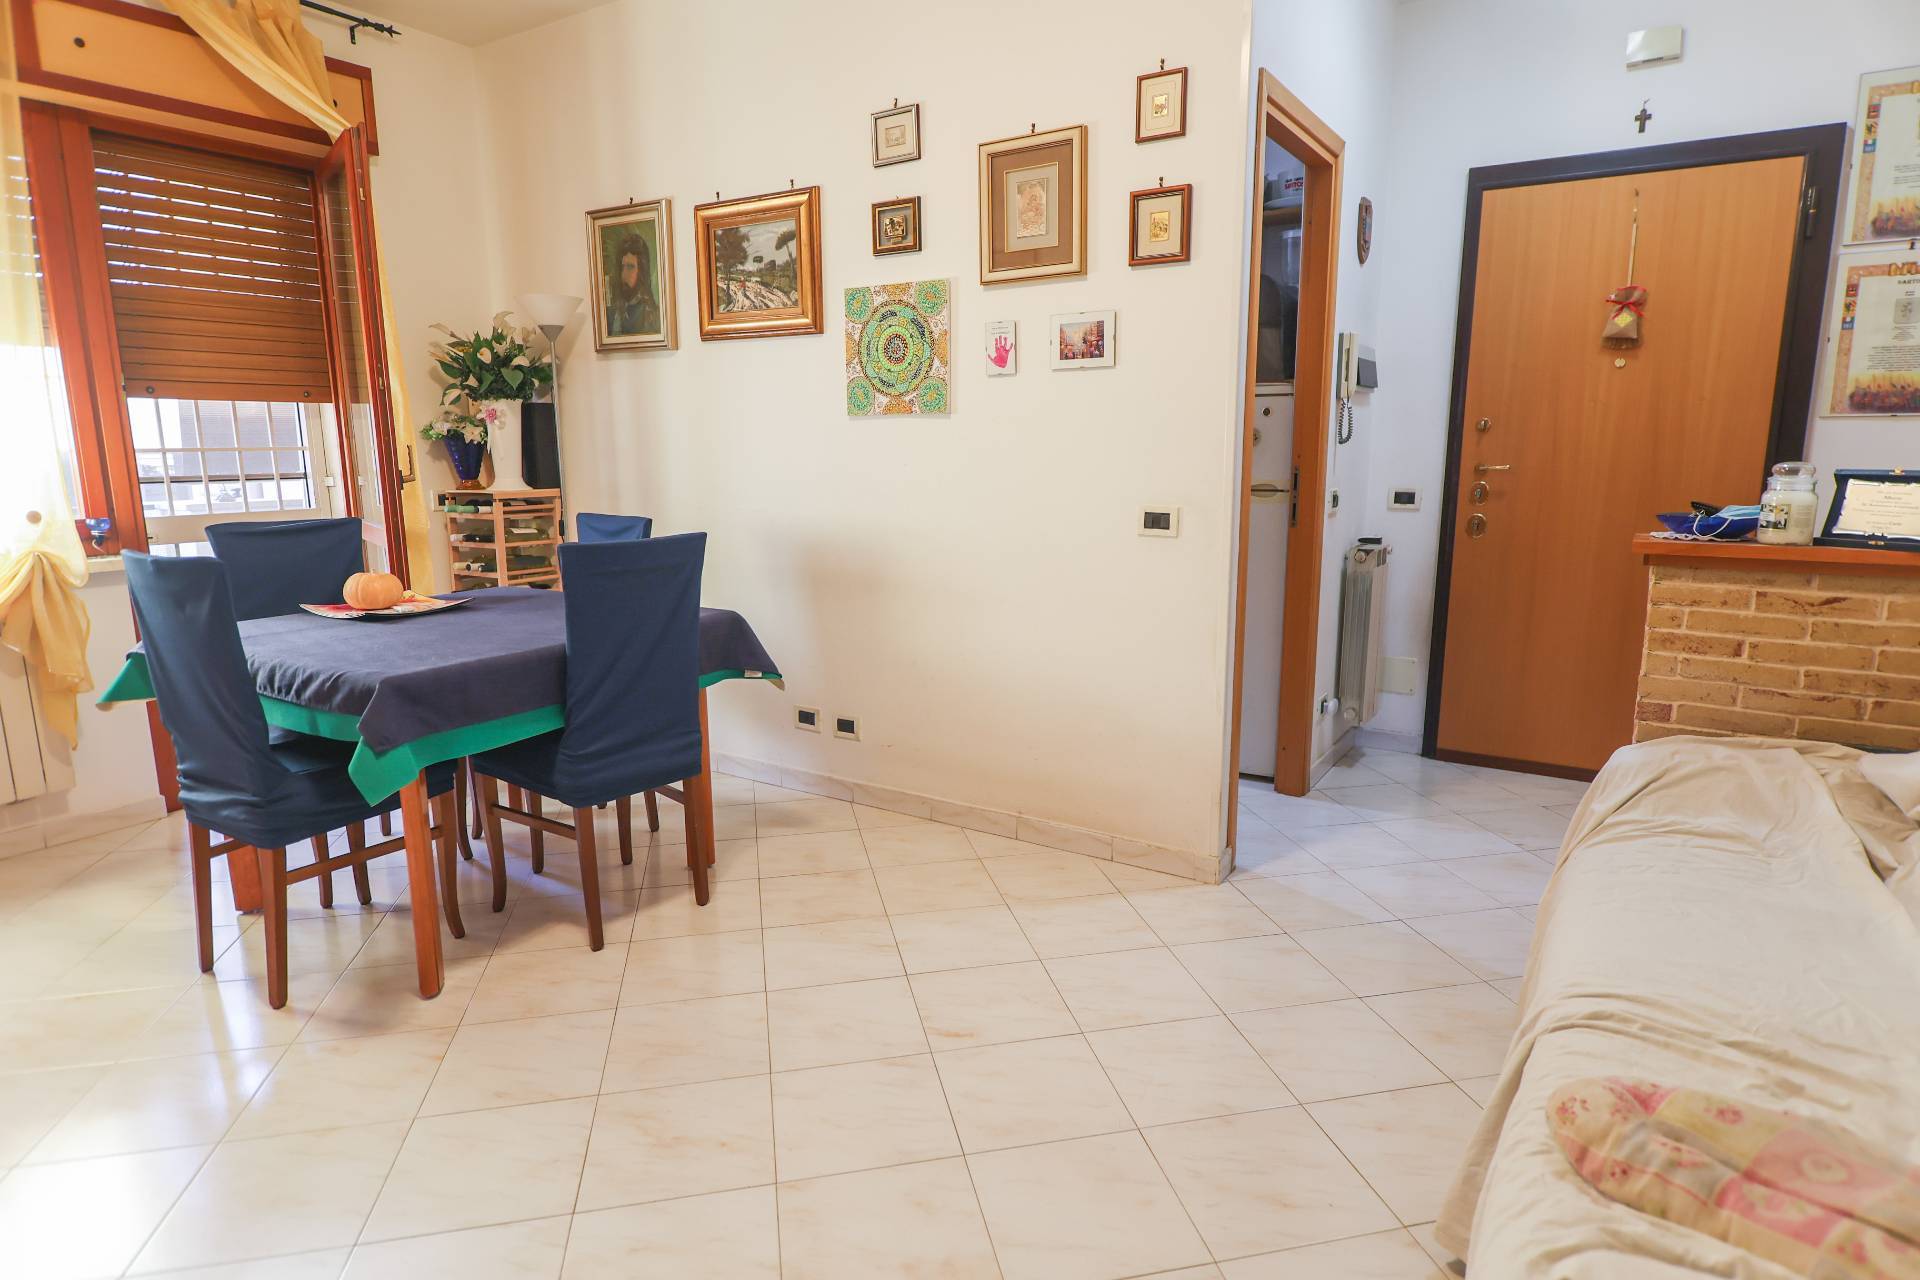 Appartamento in vendita a Monterotondo, 3 locali, zona Località: MonterotondoScalo, prezzo € 135.000 | CambioCasa.it